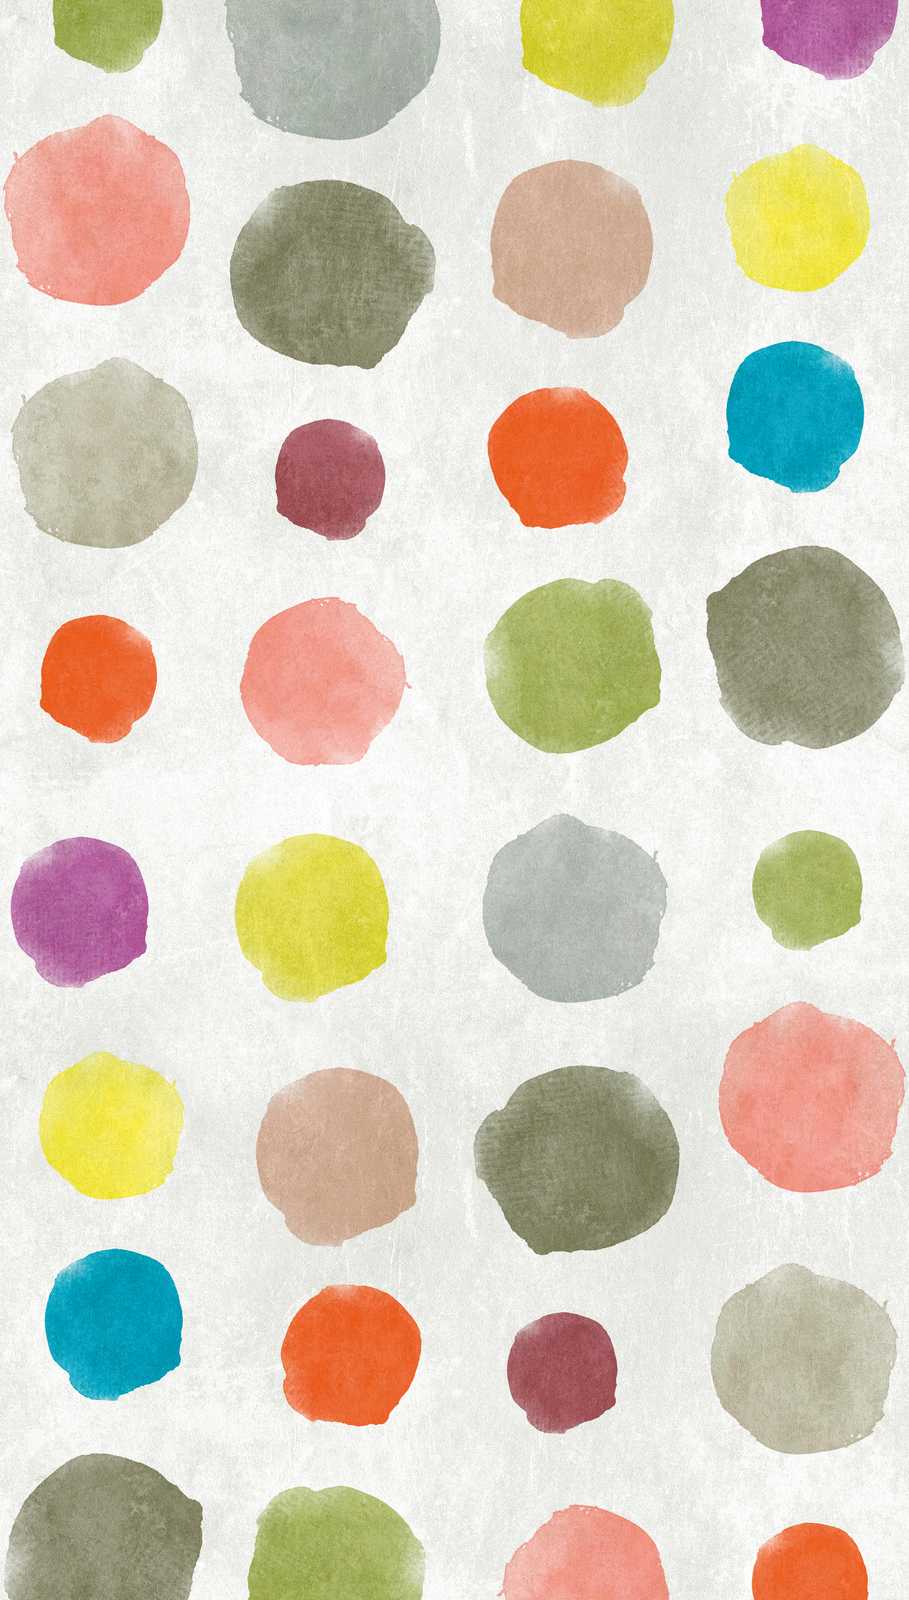             papel pintado novedad | motivo papel pintado puntos de colores en acuarela y aspecto usado
        